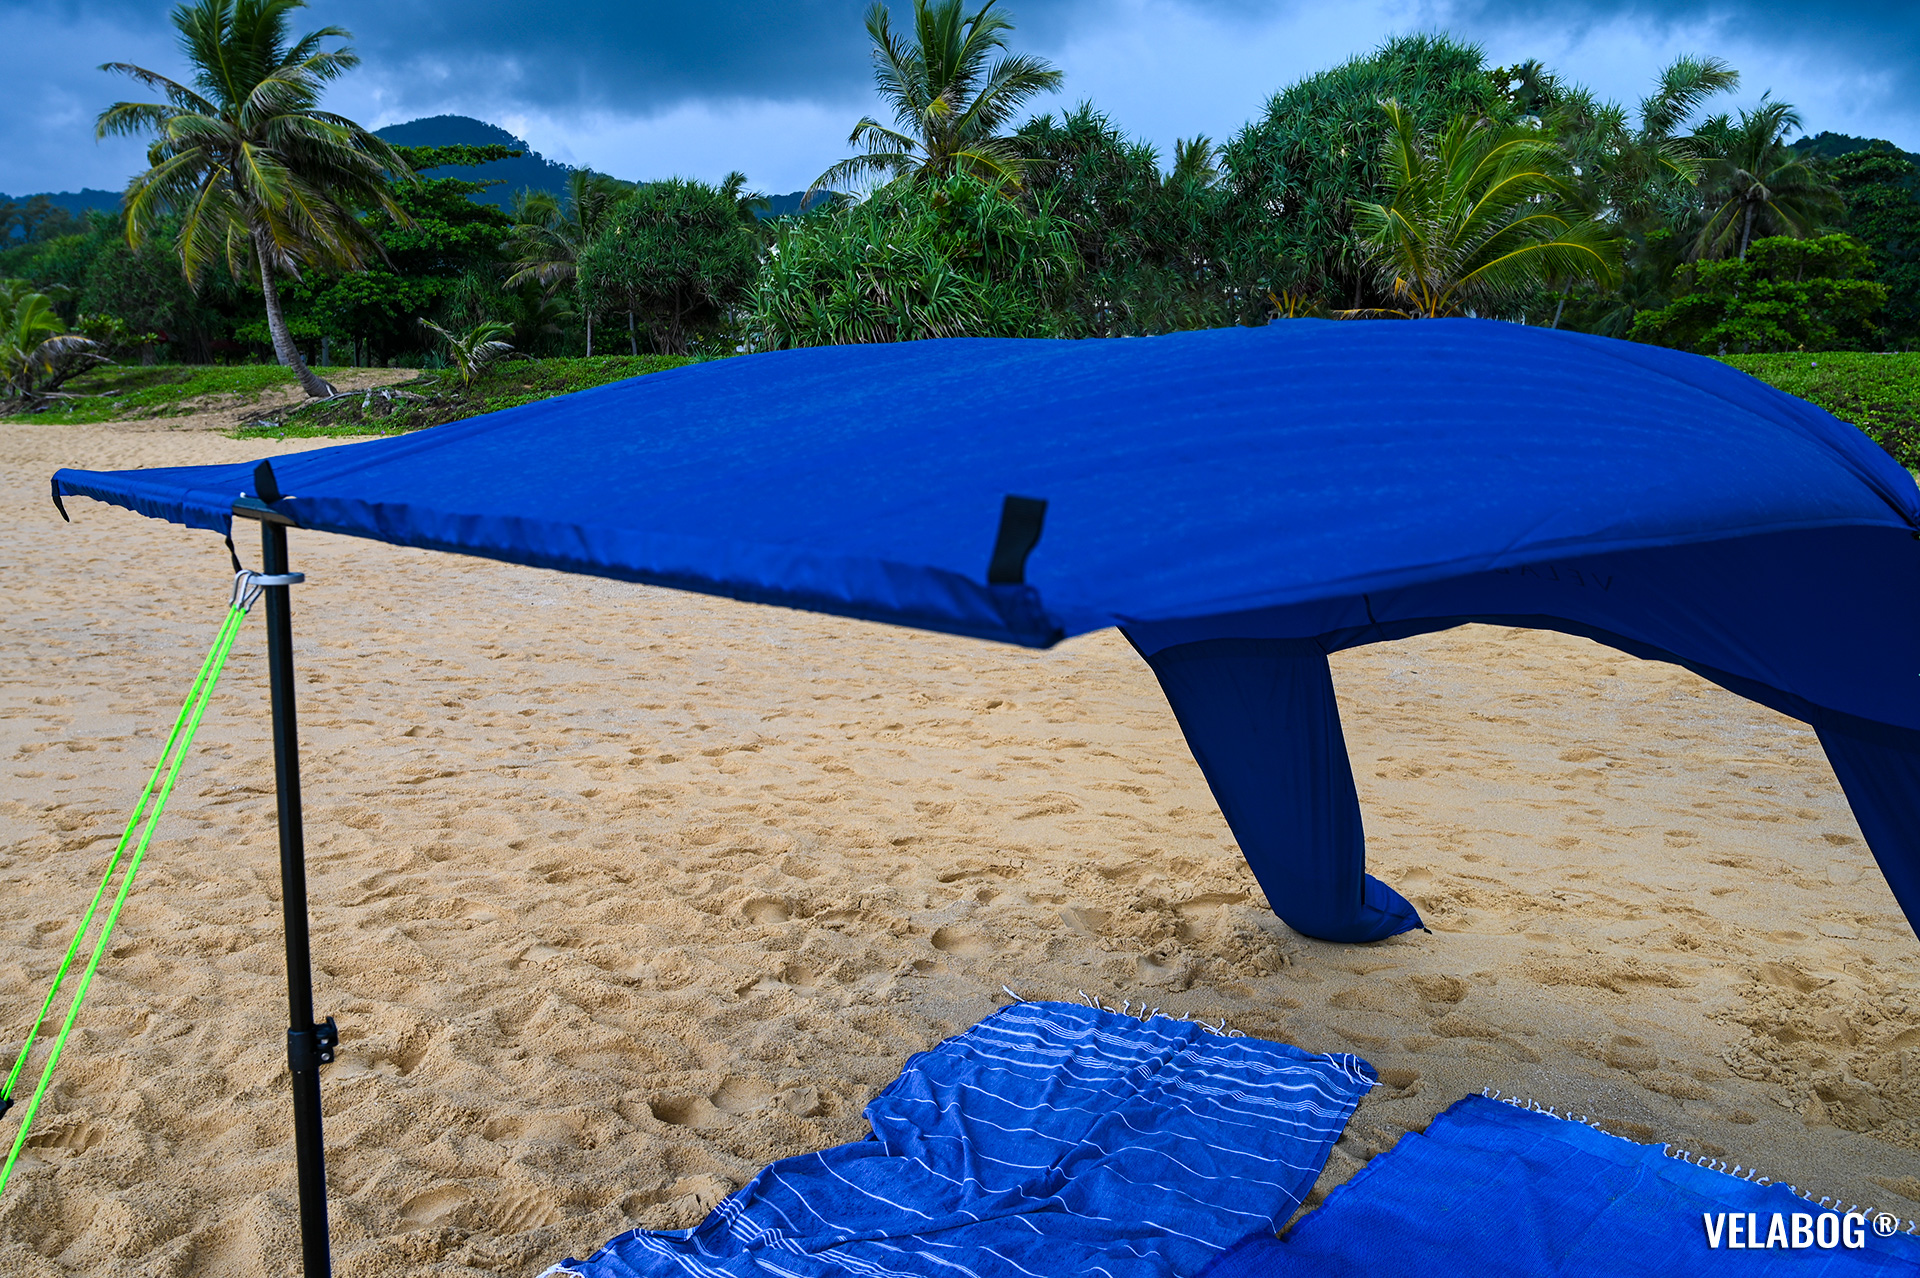 Tenda da spiaggia ombrellone Velabog Breeze, blu notte. Vela da sole sulla spiaggia in Thailandia durante un acquazzone.